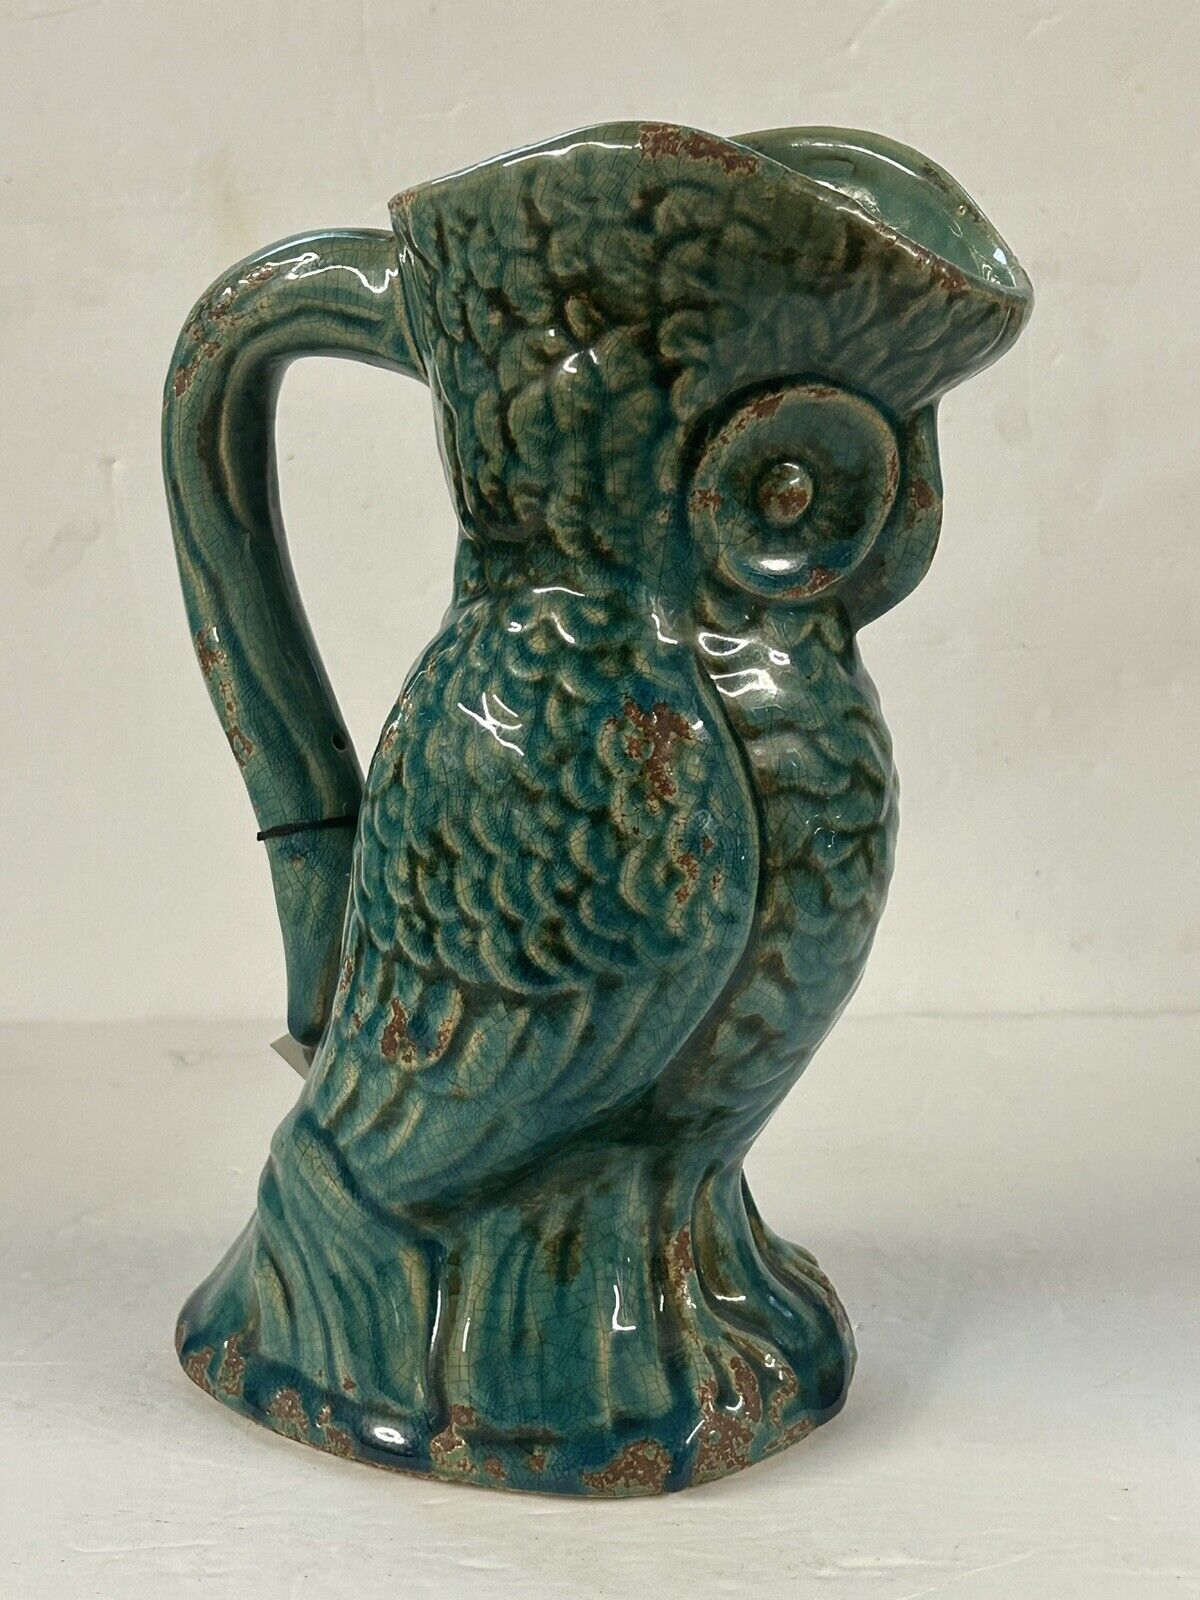 Turquoise Drip Glazed Ceramic Owl Vase Pitcher  10.5 “ H x 6 W